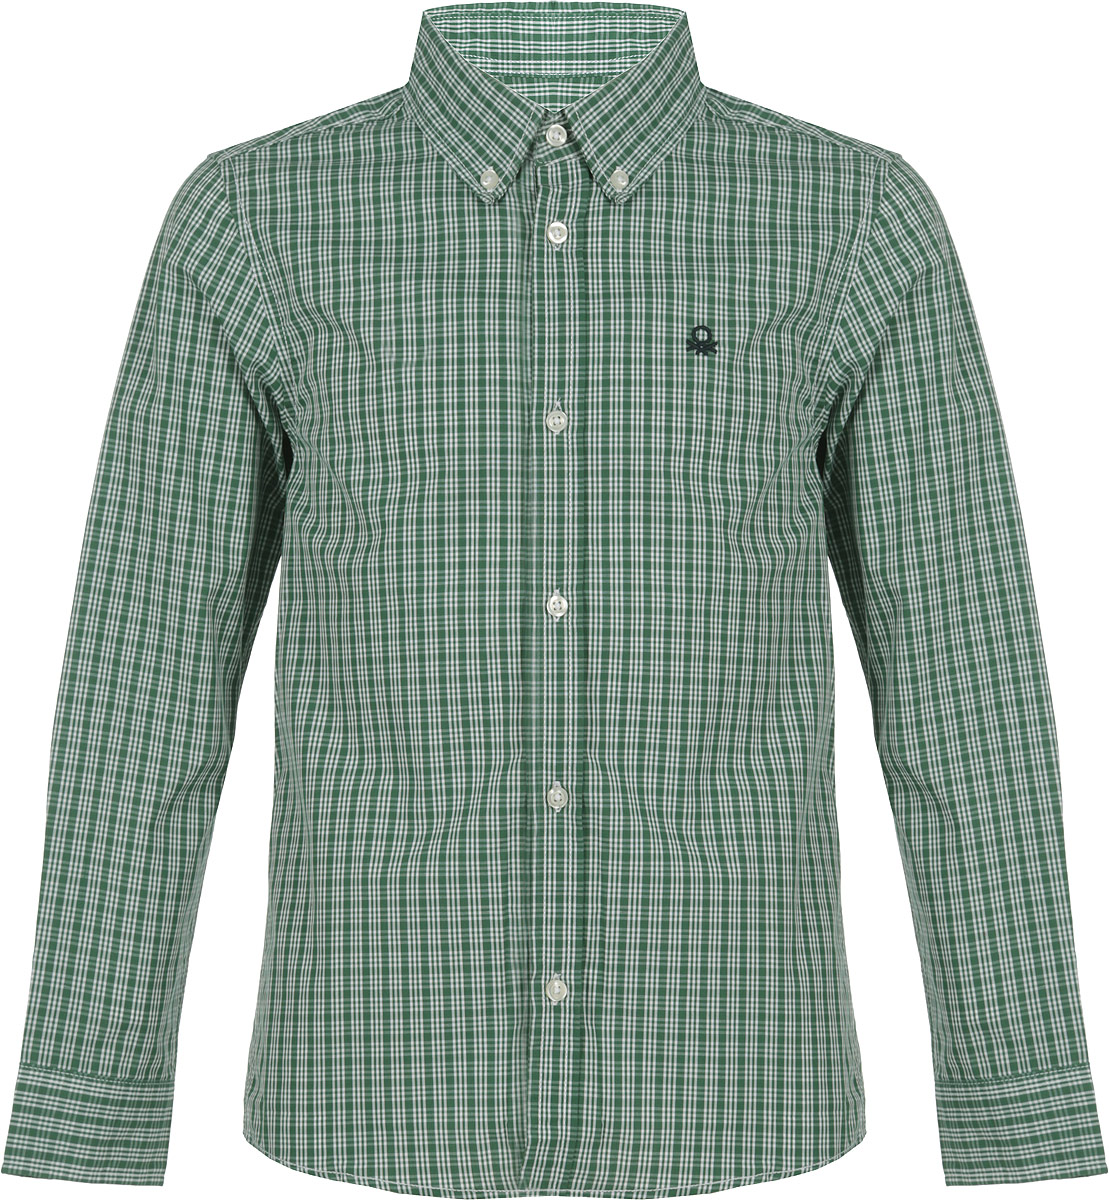 Рубашка для мальчика United Colors of Benetton, цвет: зеленый. 5DU65Q200_992. Размер L (140)